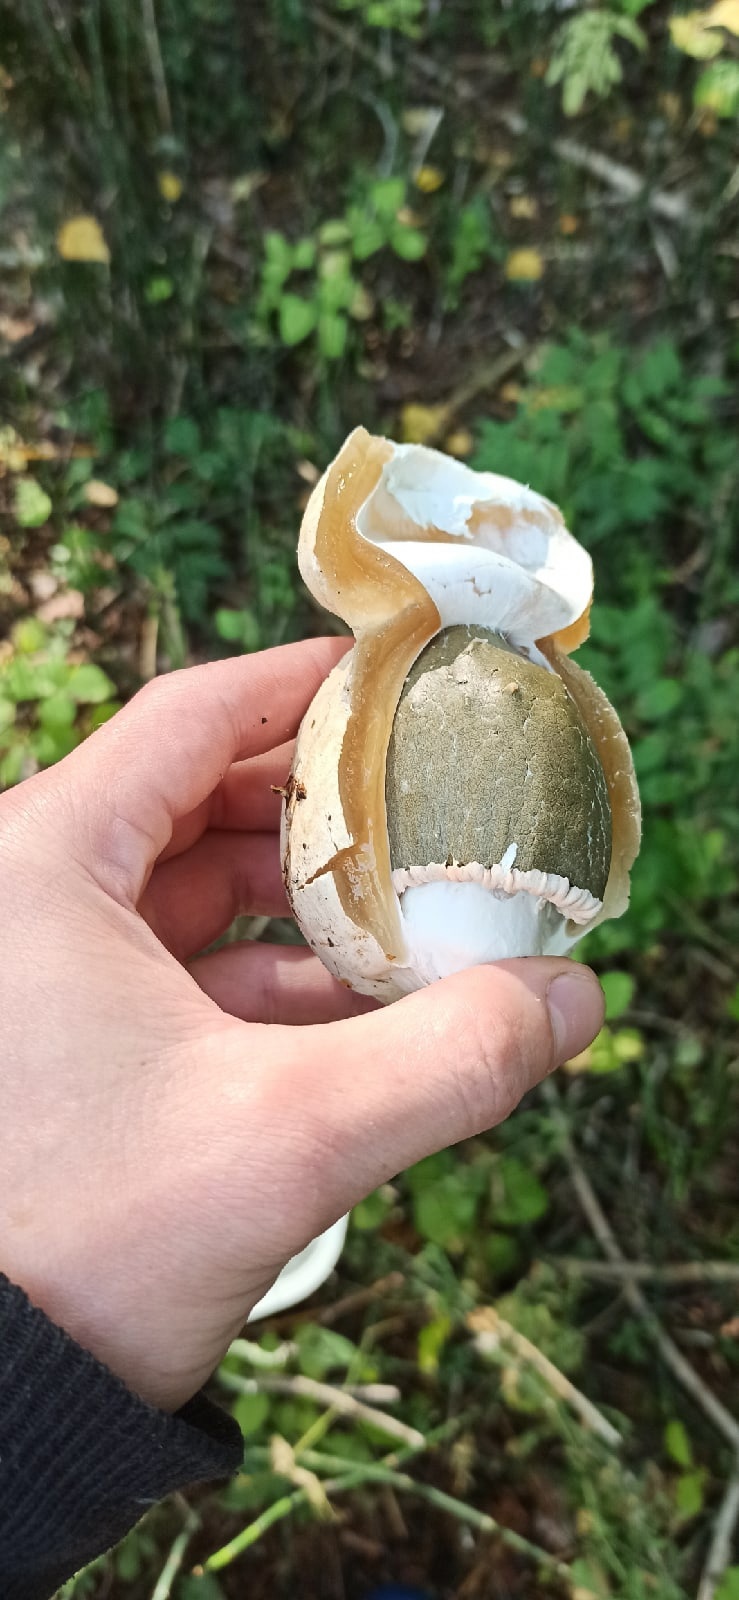 Очень интересная форма гриба, похожая на яйцо или орешек